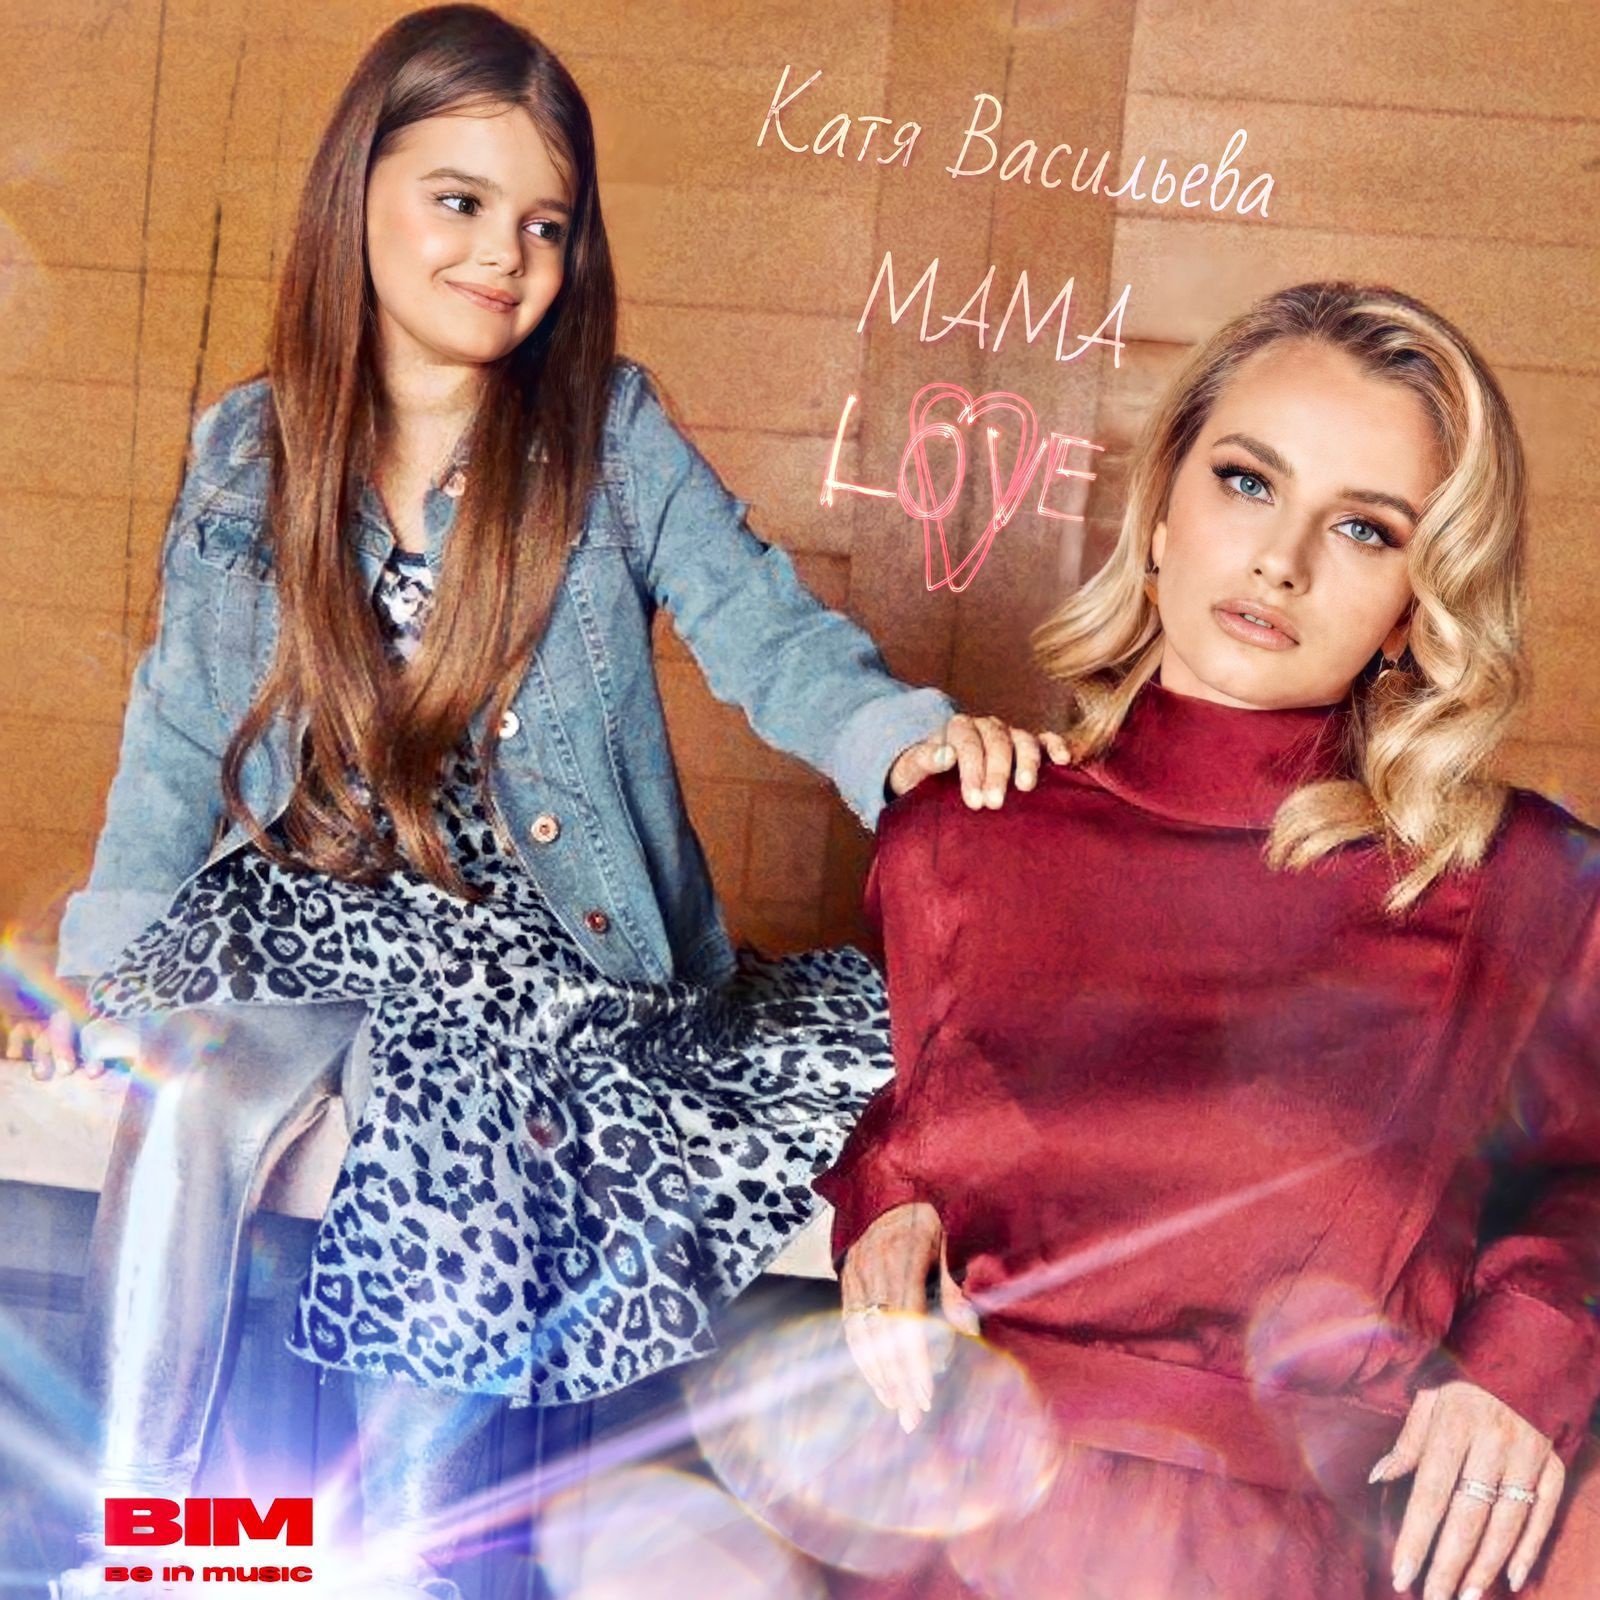 Юная певица Катя Васильева выпустила новую песню "Мама"